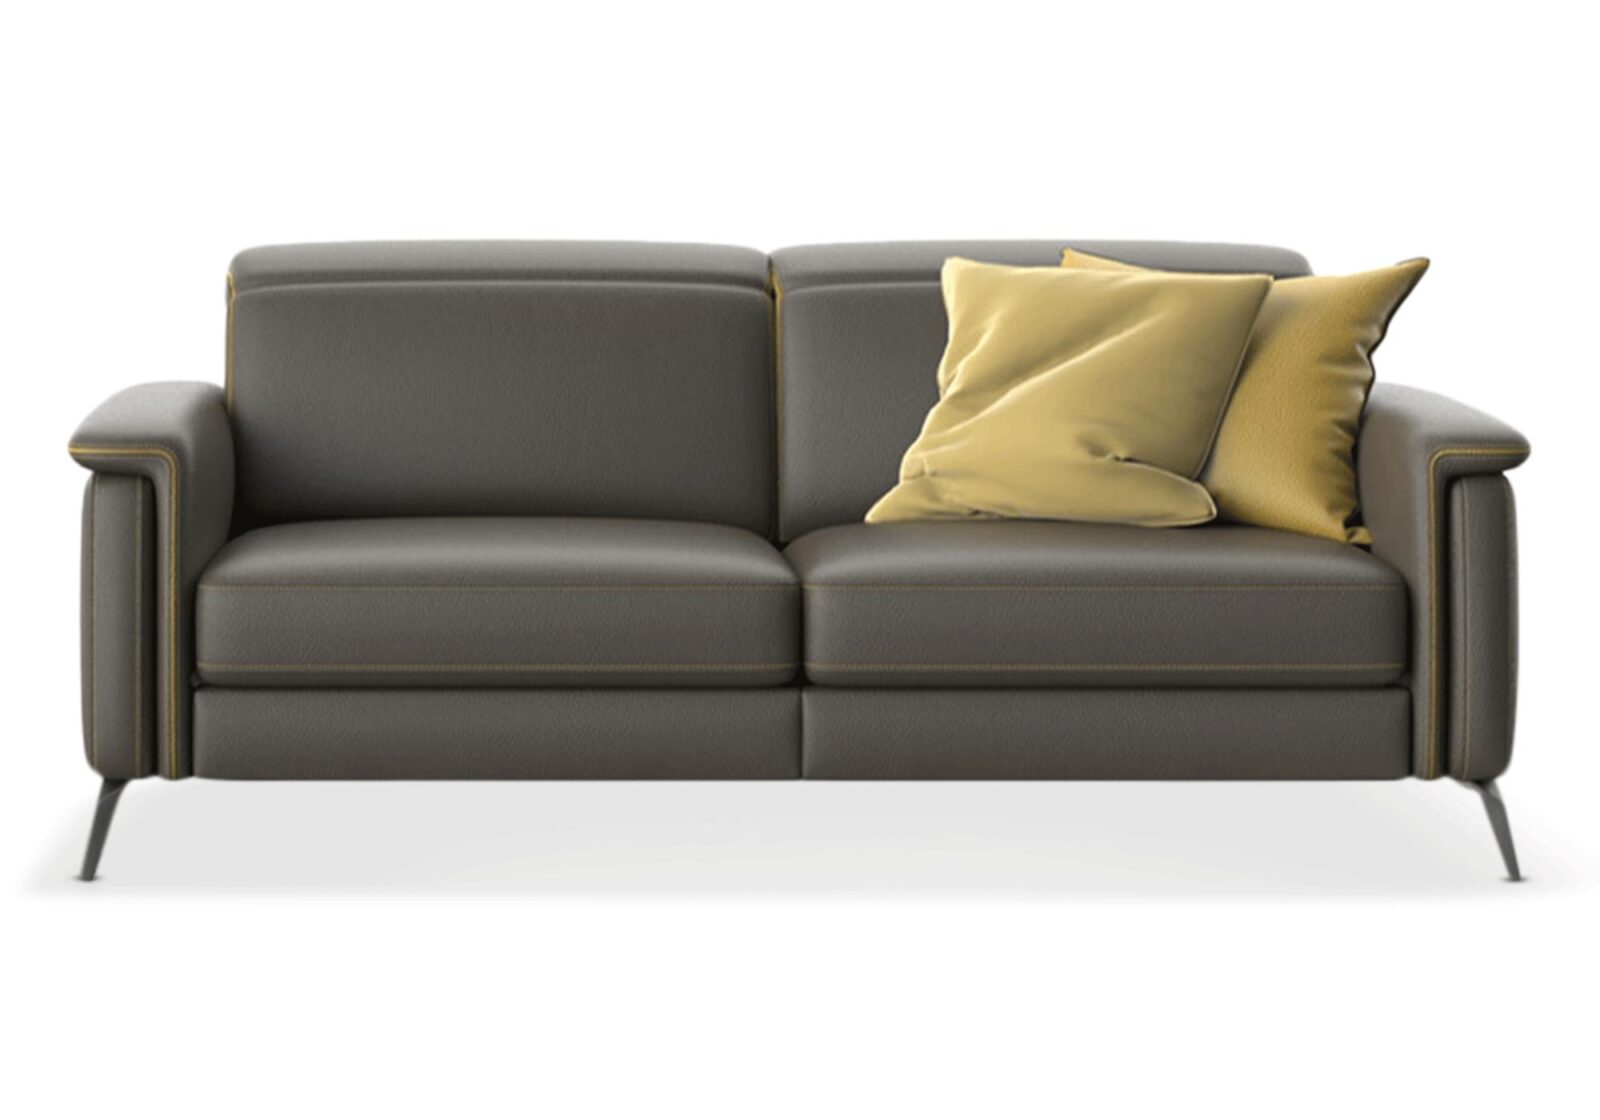 3er Sofa Sunset mit Kontrastnaht. Bezug: Leder. Farbe: Anthrazit  Absetzung gelb. Erhältlich bei Möbel Gallati.